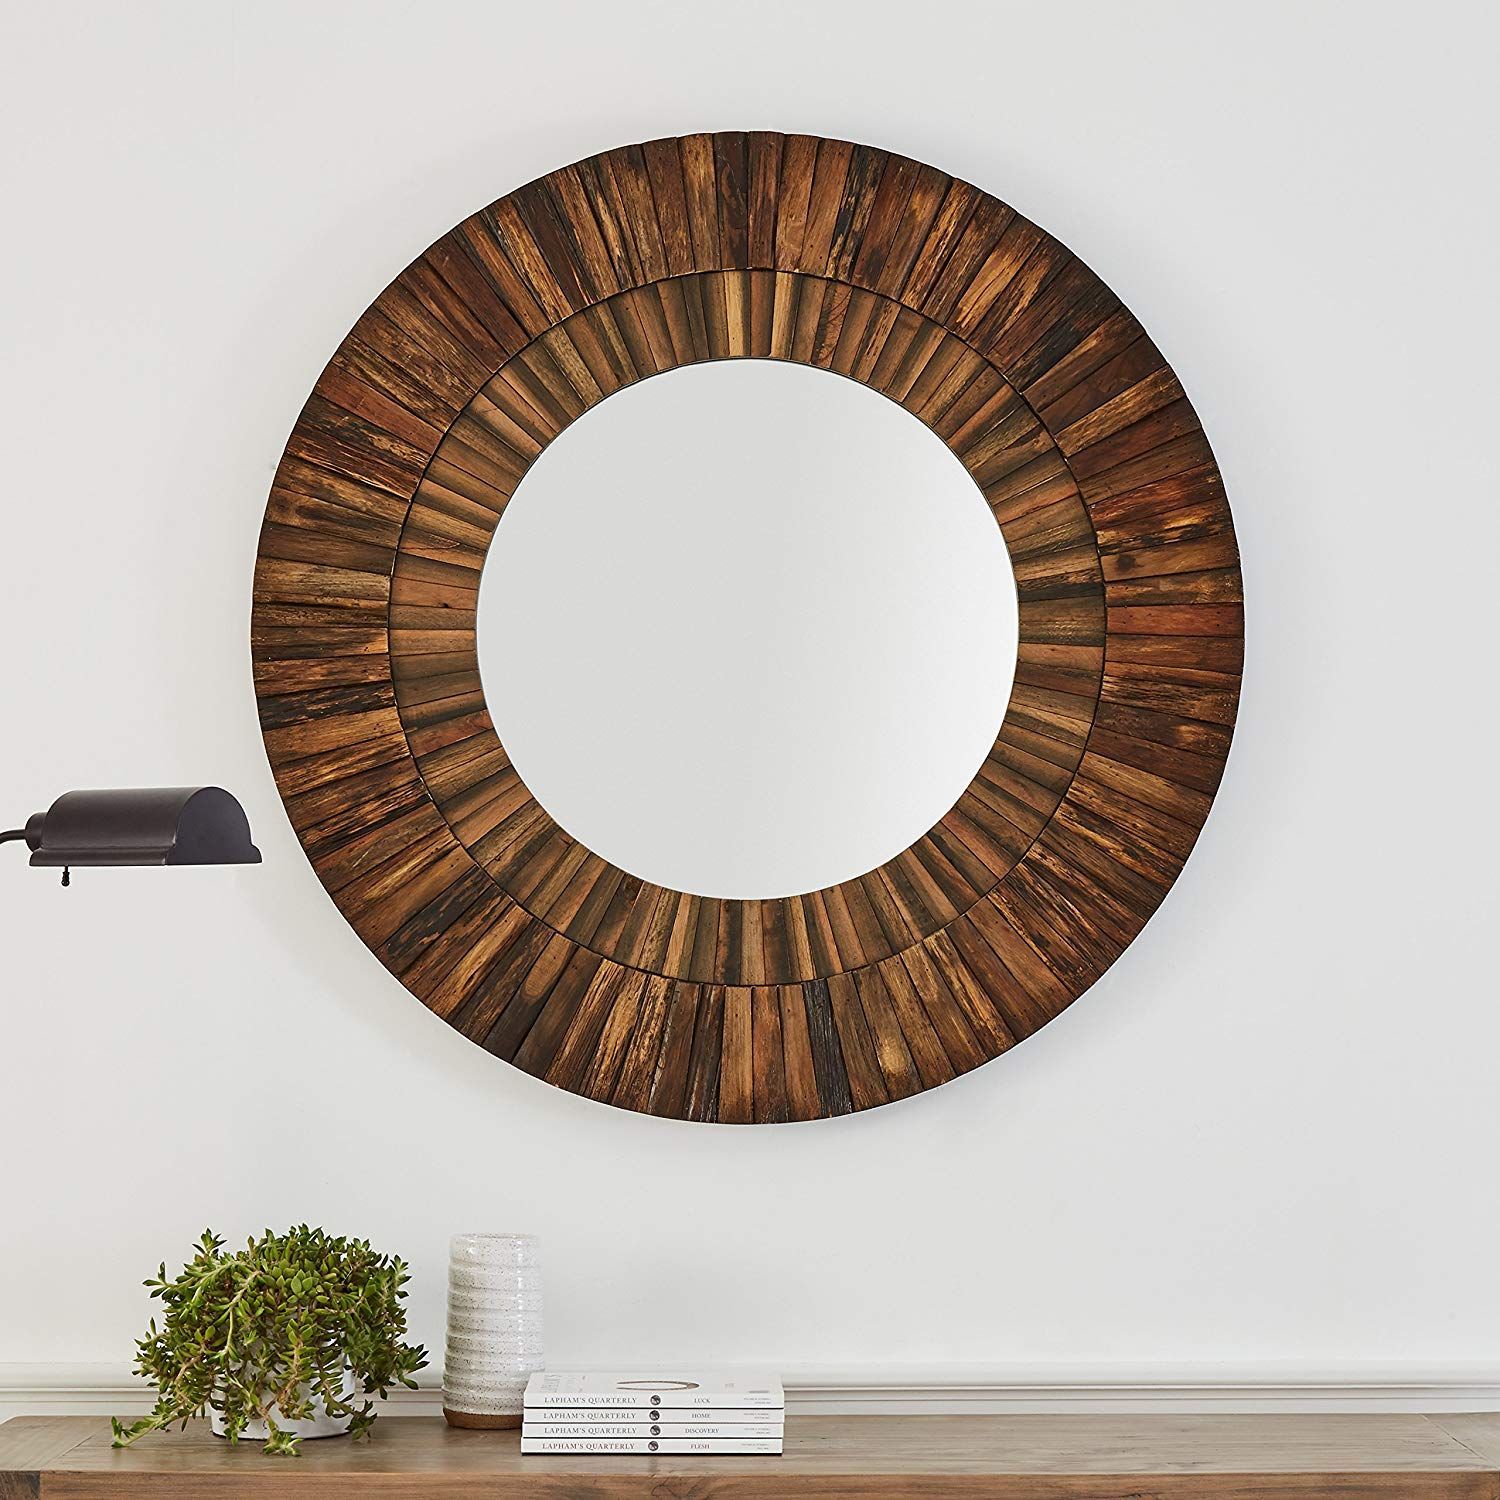 Stone & Beam Round Layered Wood Mirror, 42" H, Dark Wood Finish – Wall Pertaining To Organic Natural Wood Round Wall Mirrors (View 13 of 15)